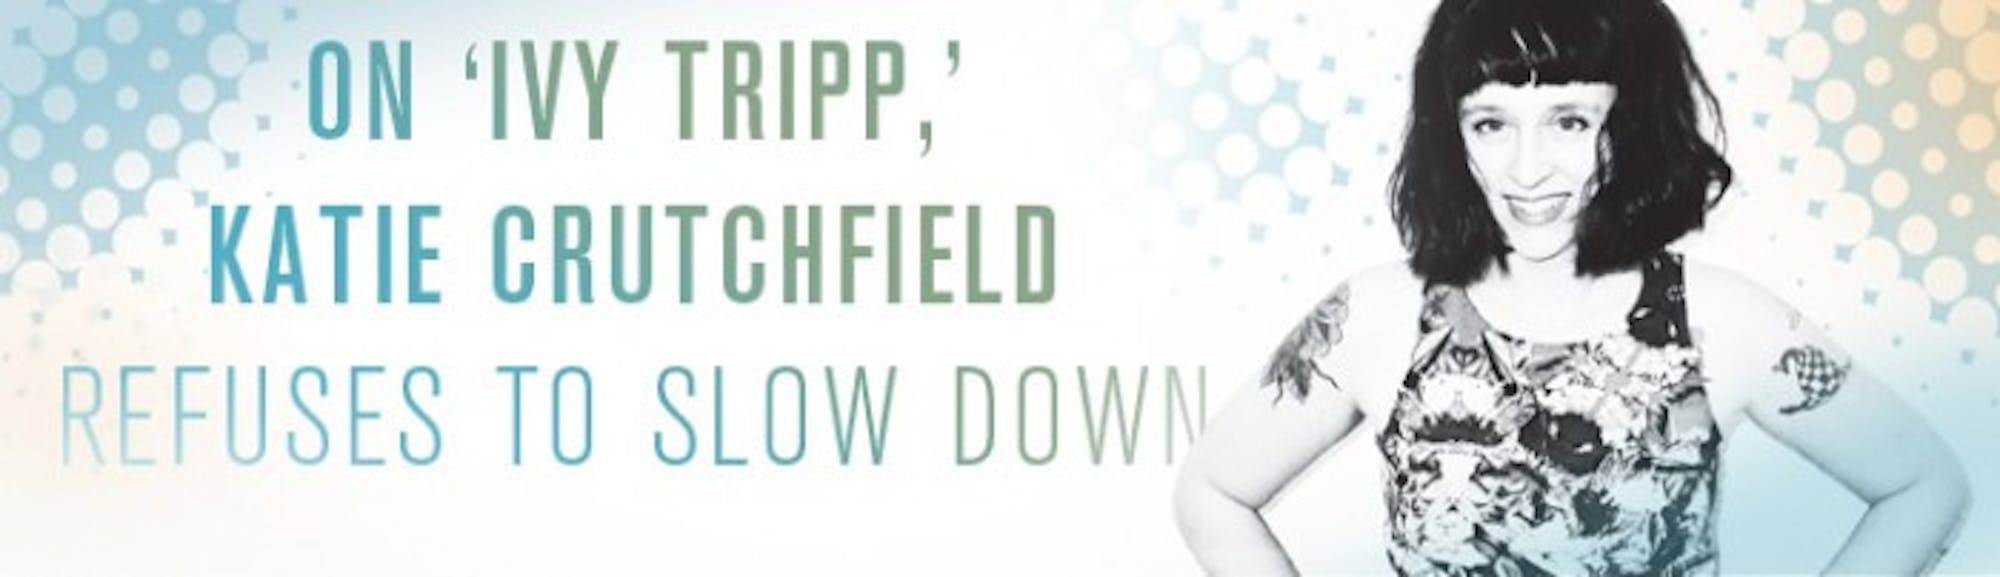 On 'Ivy Tripp,' Katie Crutchfield refuses to slow down